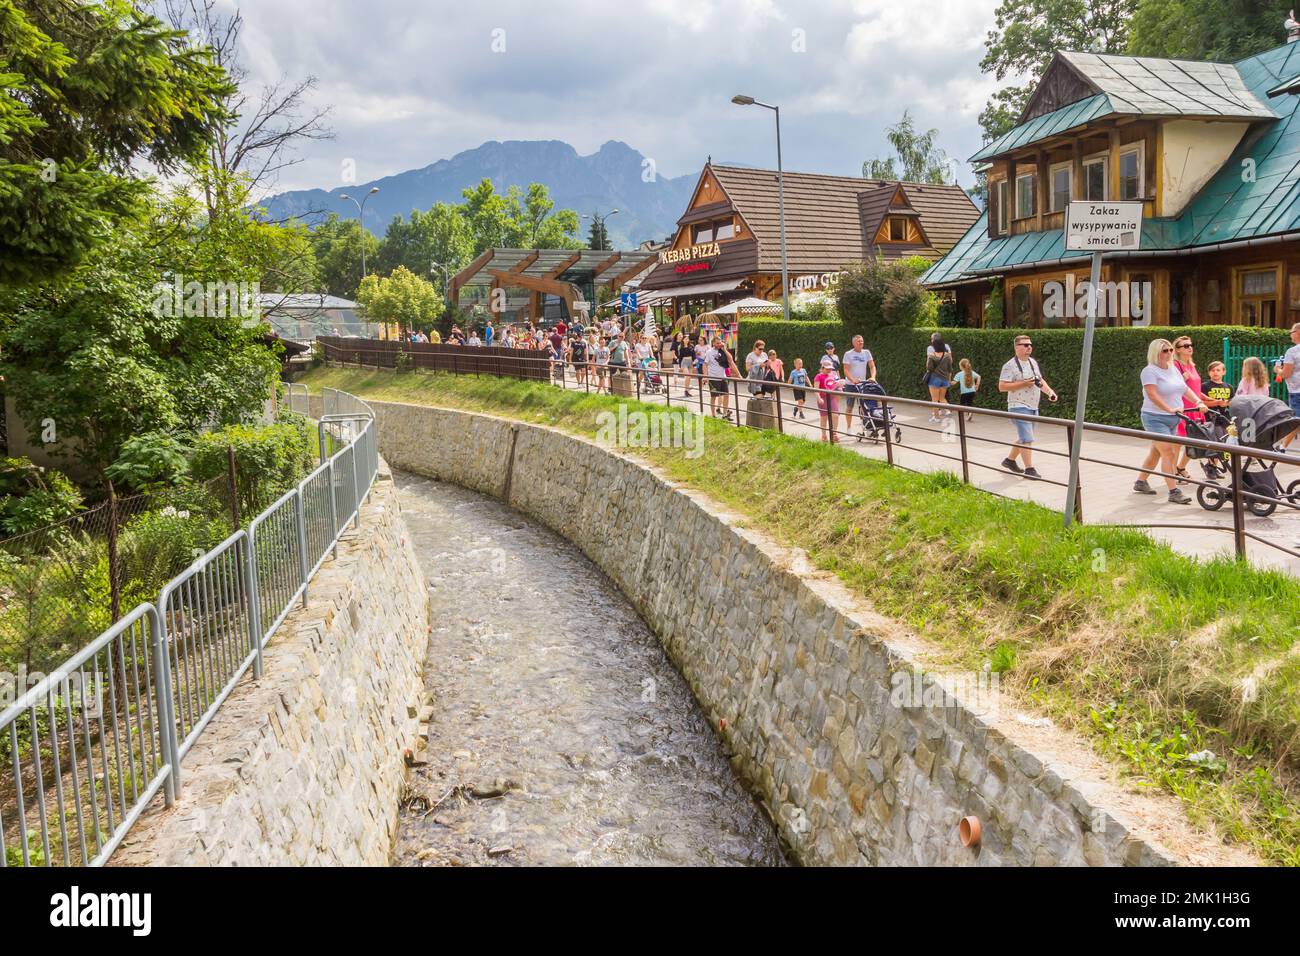 Touristes marchant le long du ruisseau et des boutiques de souvenirs à Zakopane, Pologne Banque D'Images